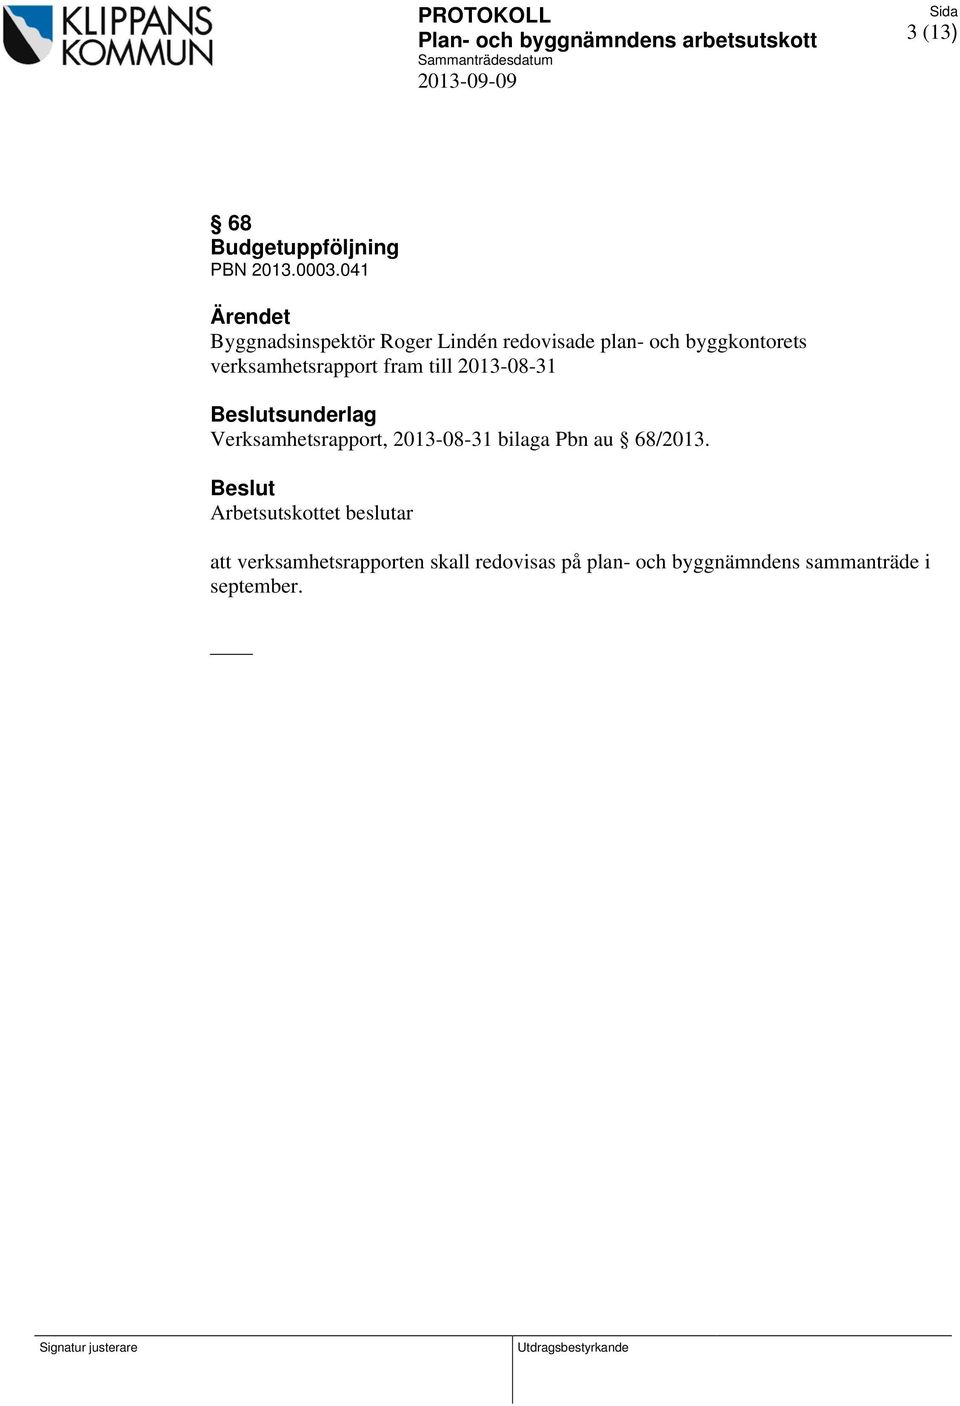 verksamhetsrapport fram till 2013-08-31 sunderlag Verksamhetsrapport, 2013-08-31